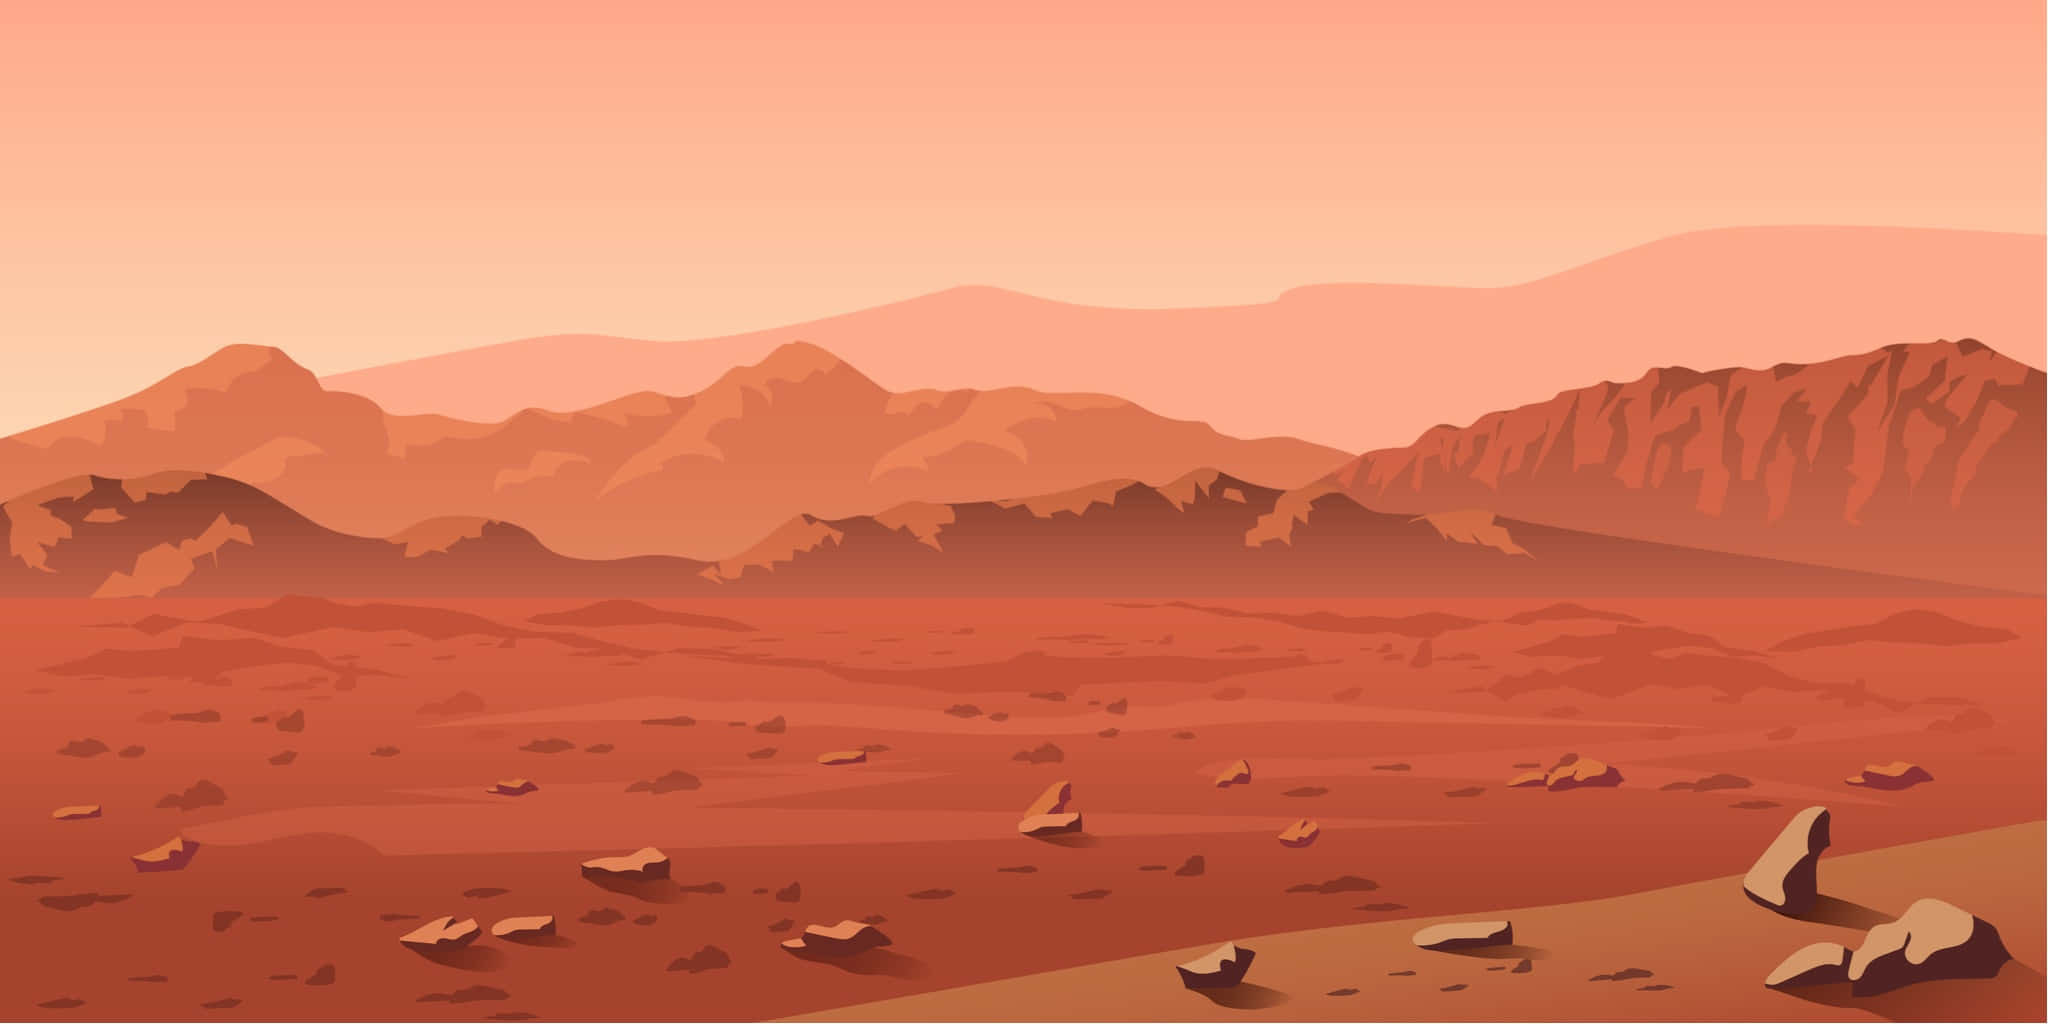 Bienvenidosal Planeta Rojo - Marte